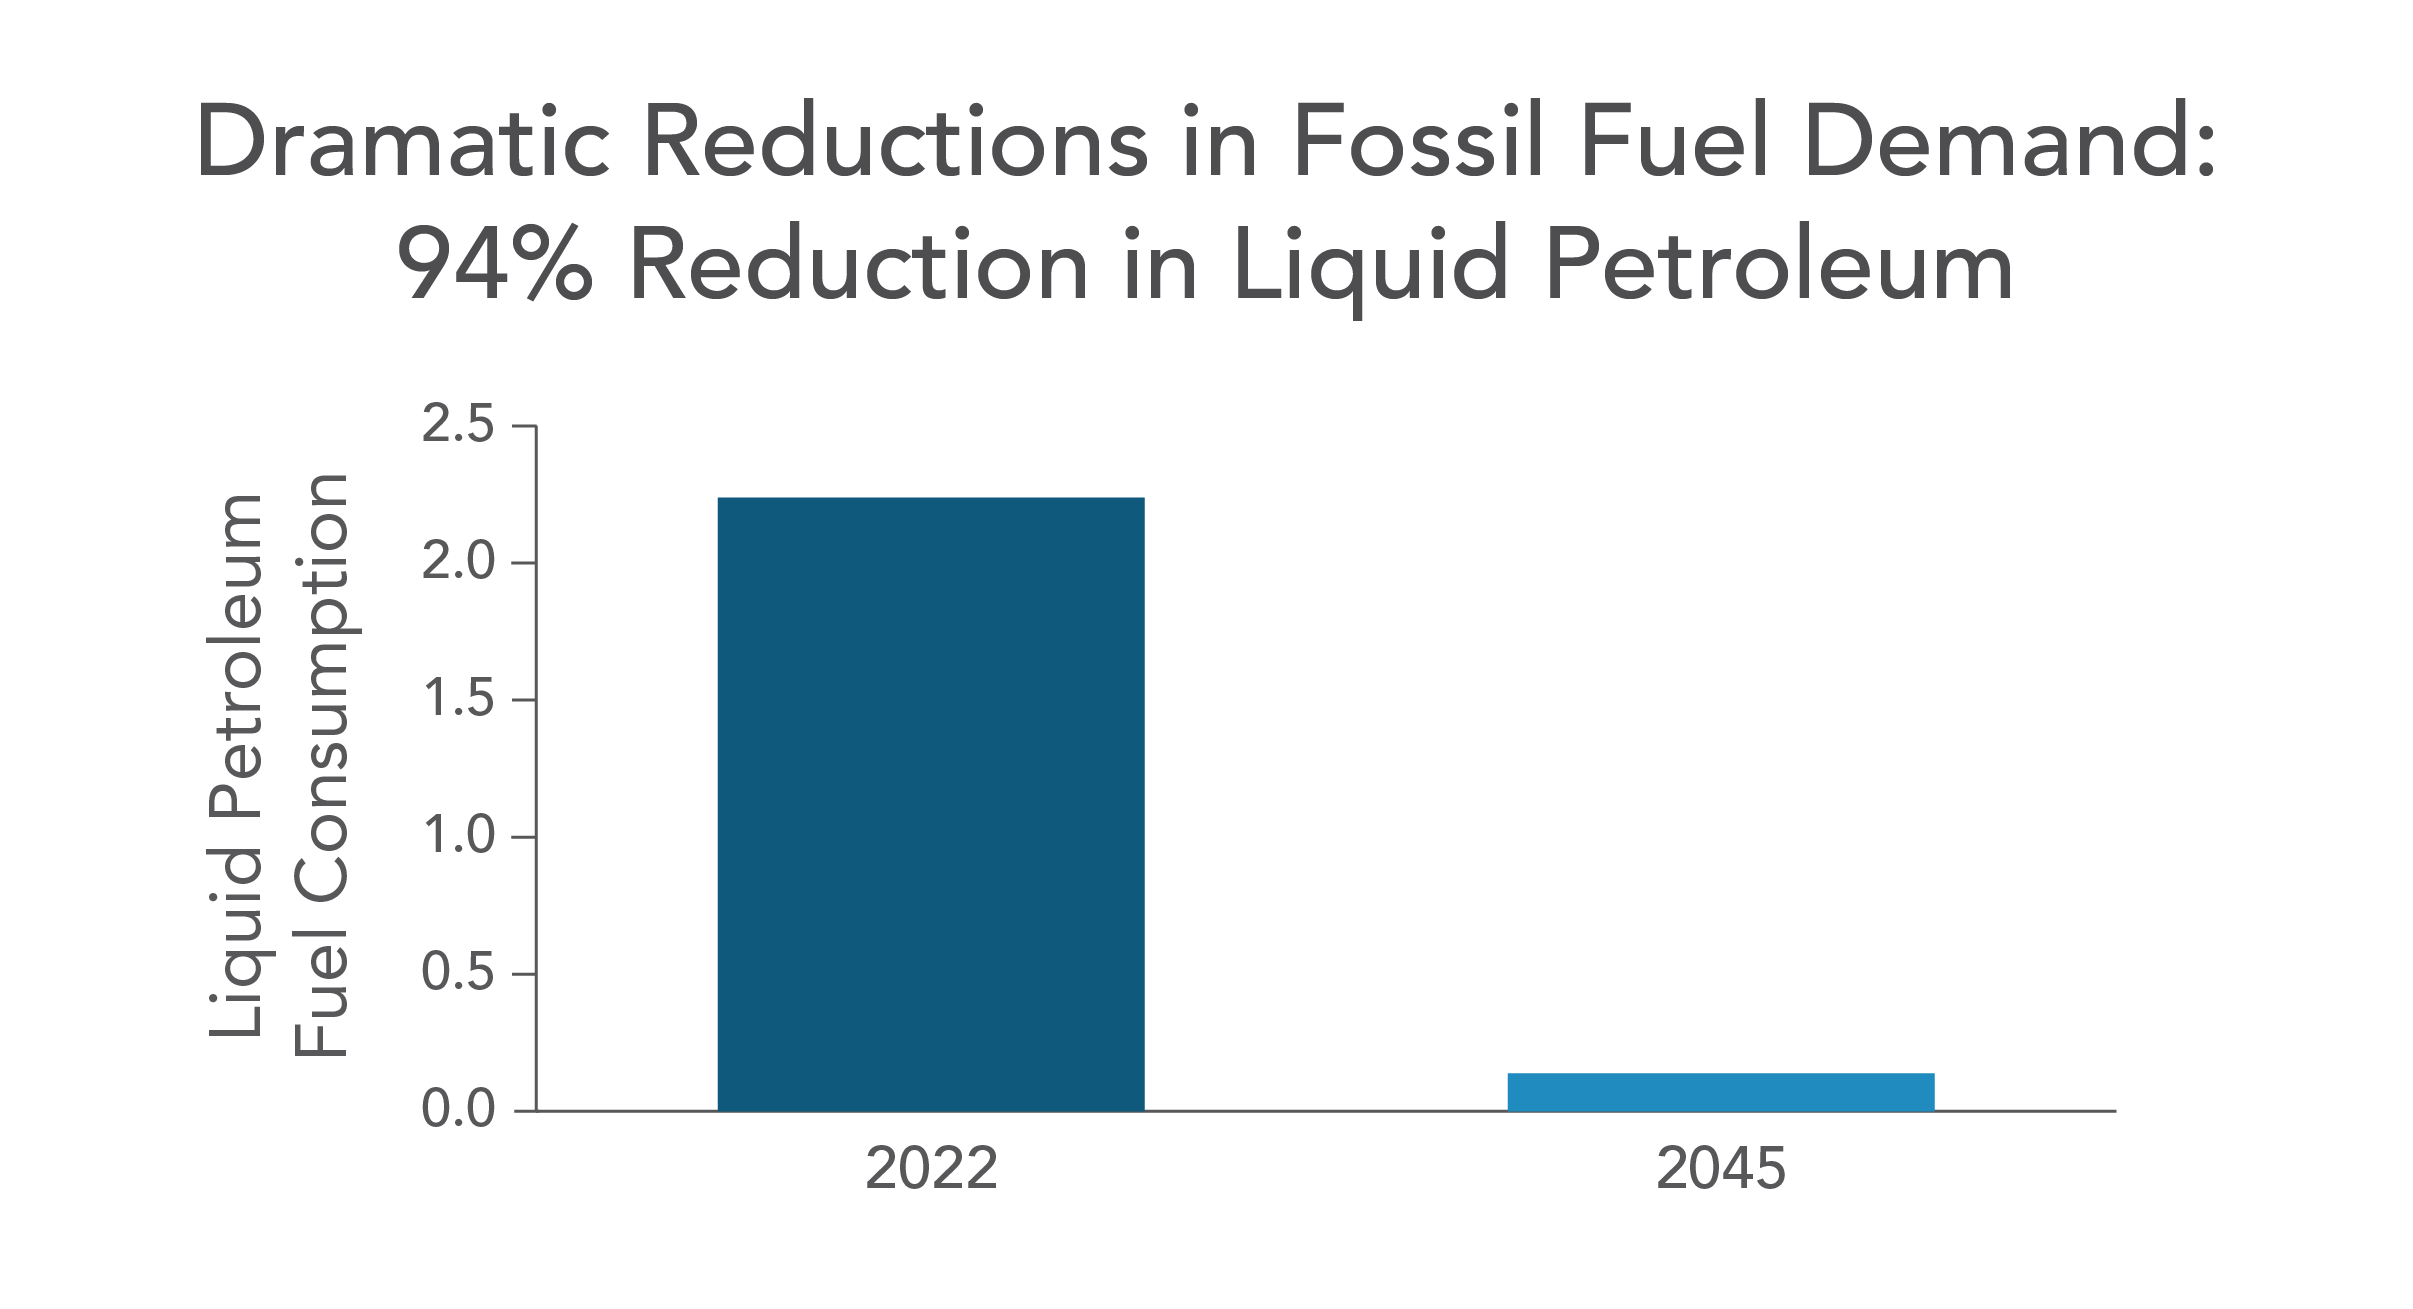 94% reduction in liquid petroleum 